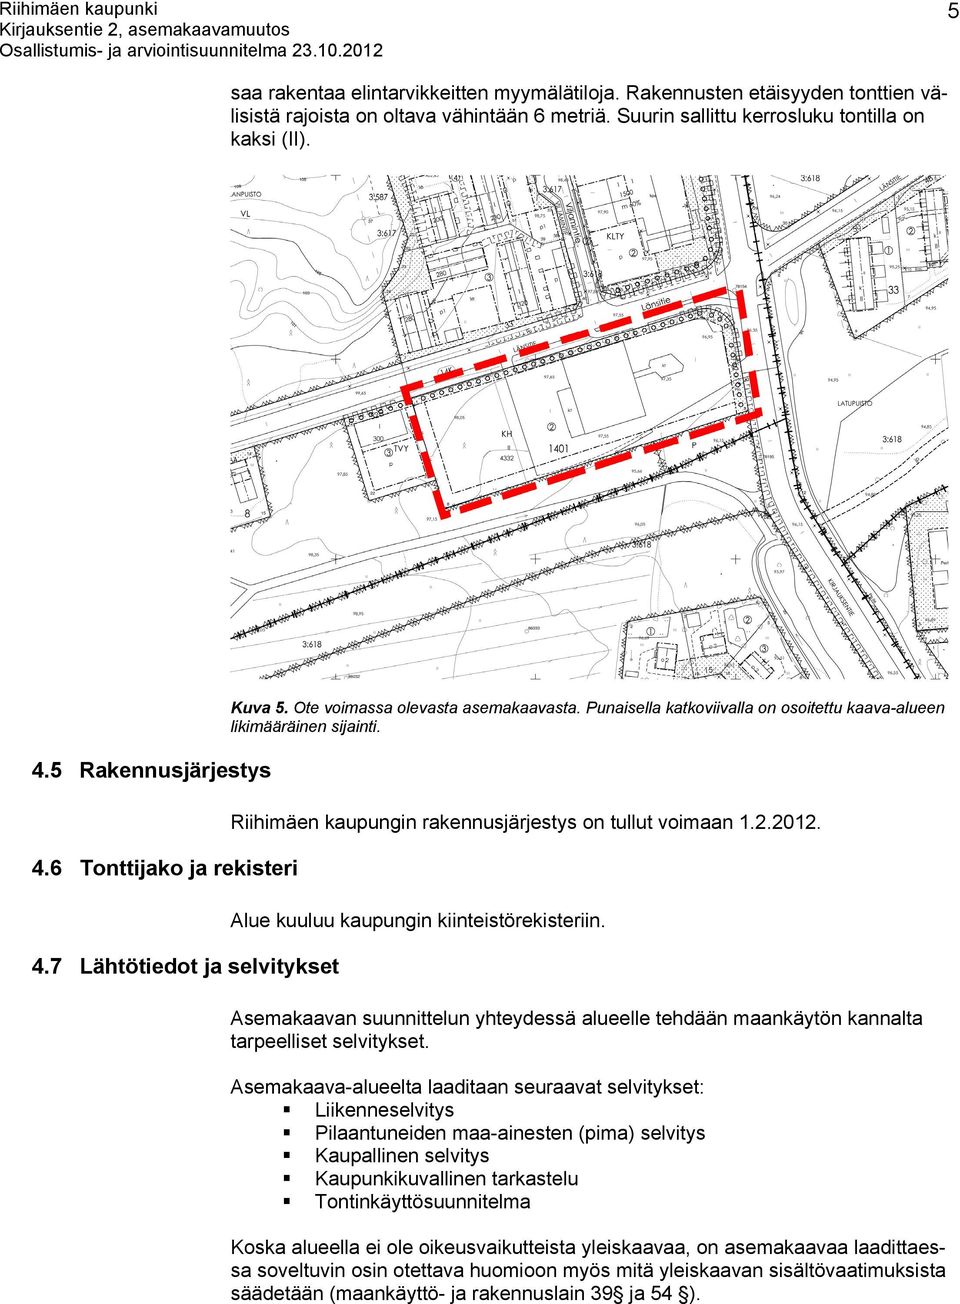 Riihimäen kaupungin rakennusjärjestys on tullut voimaan 1.2.2012. Alue kuuluu kaupungin kiinteistörekisteriin.